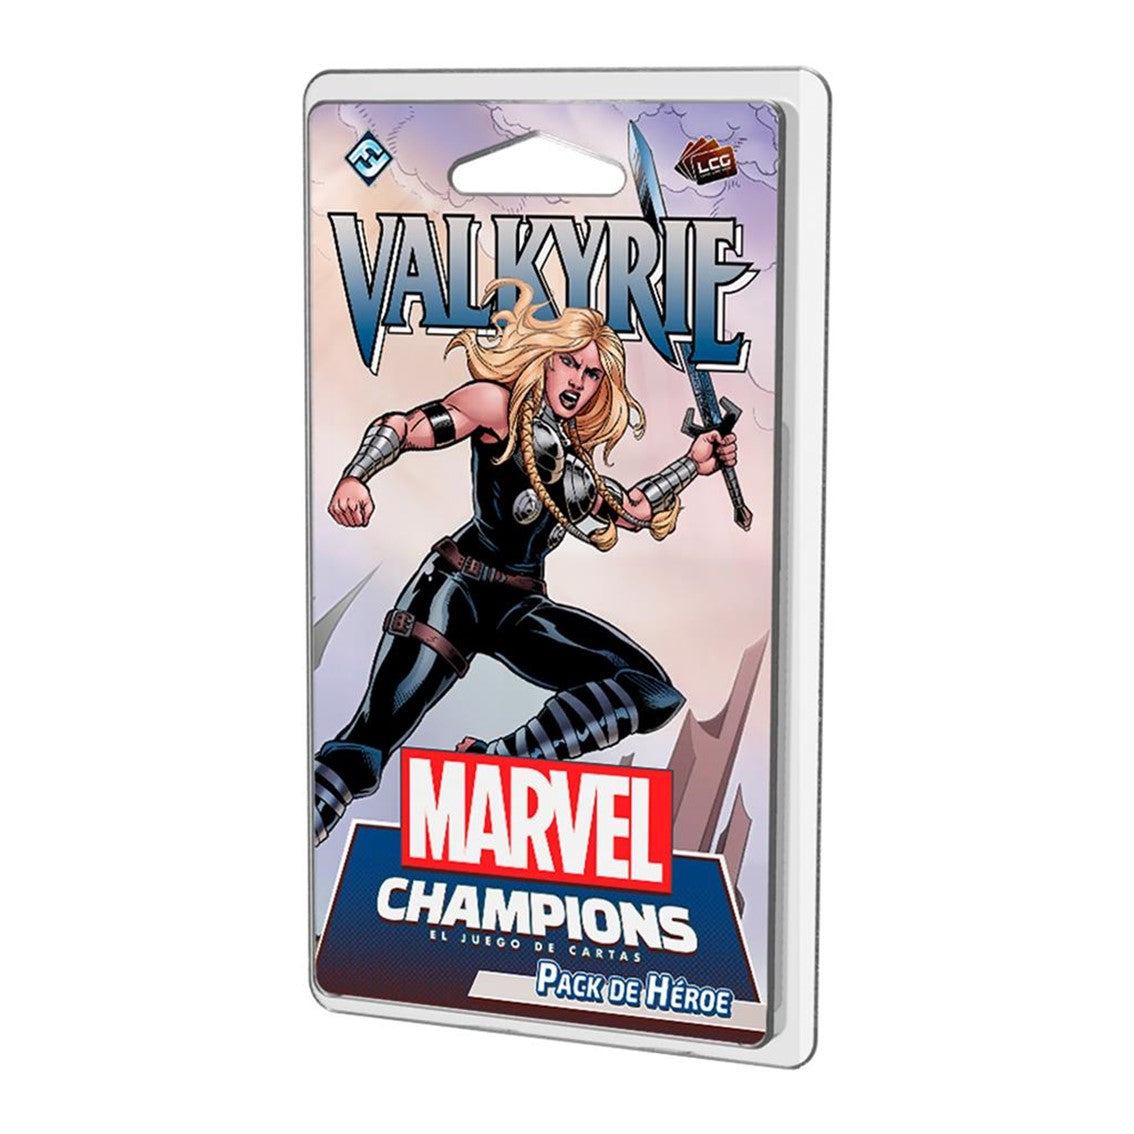 Juego de mesa Marvel Champions: Valkyrie (pack de héroe)